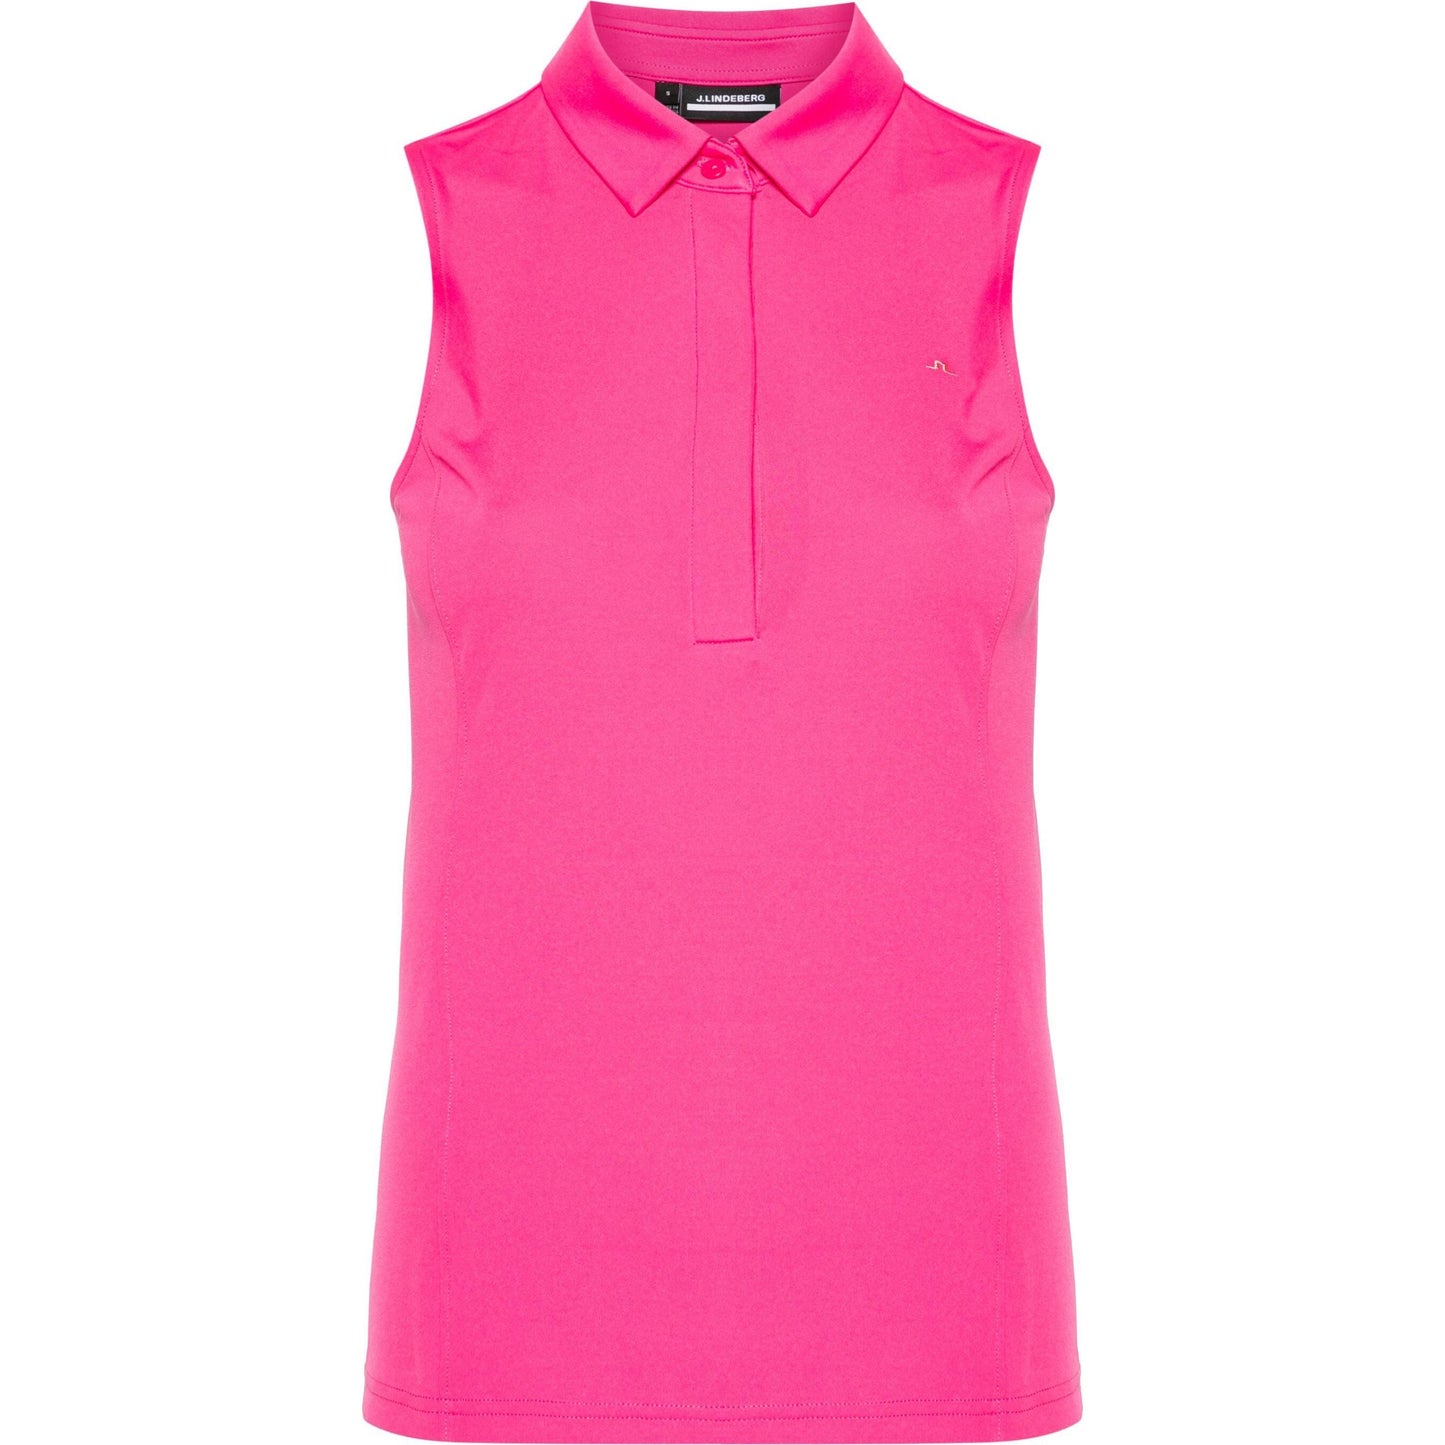 J.LINDEBERG Polo marškinėliai moterims, rožinė, Dena sleeveless top